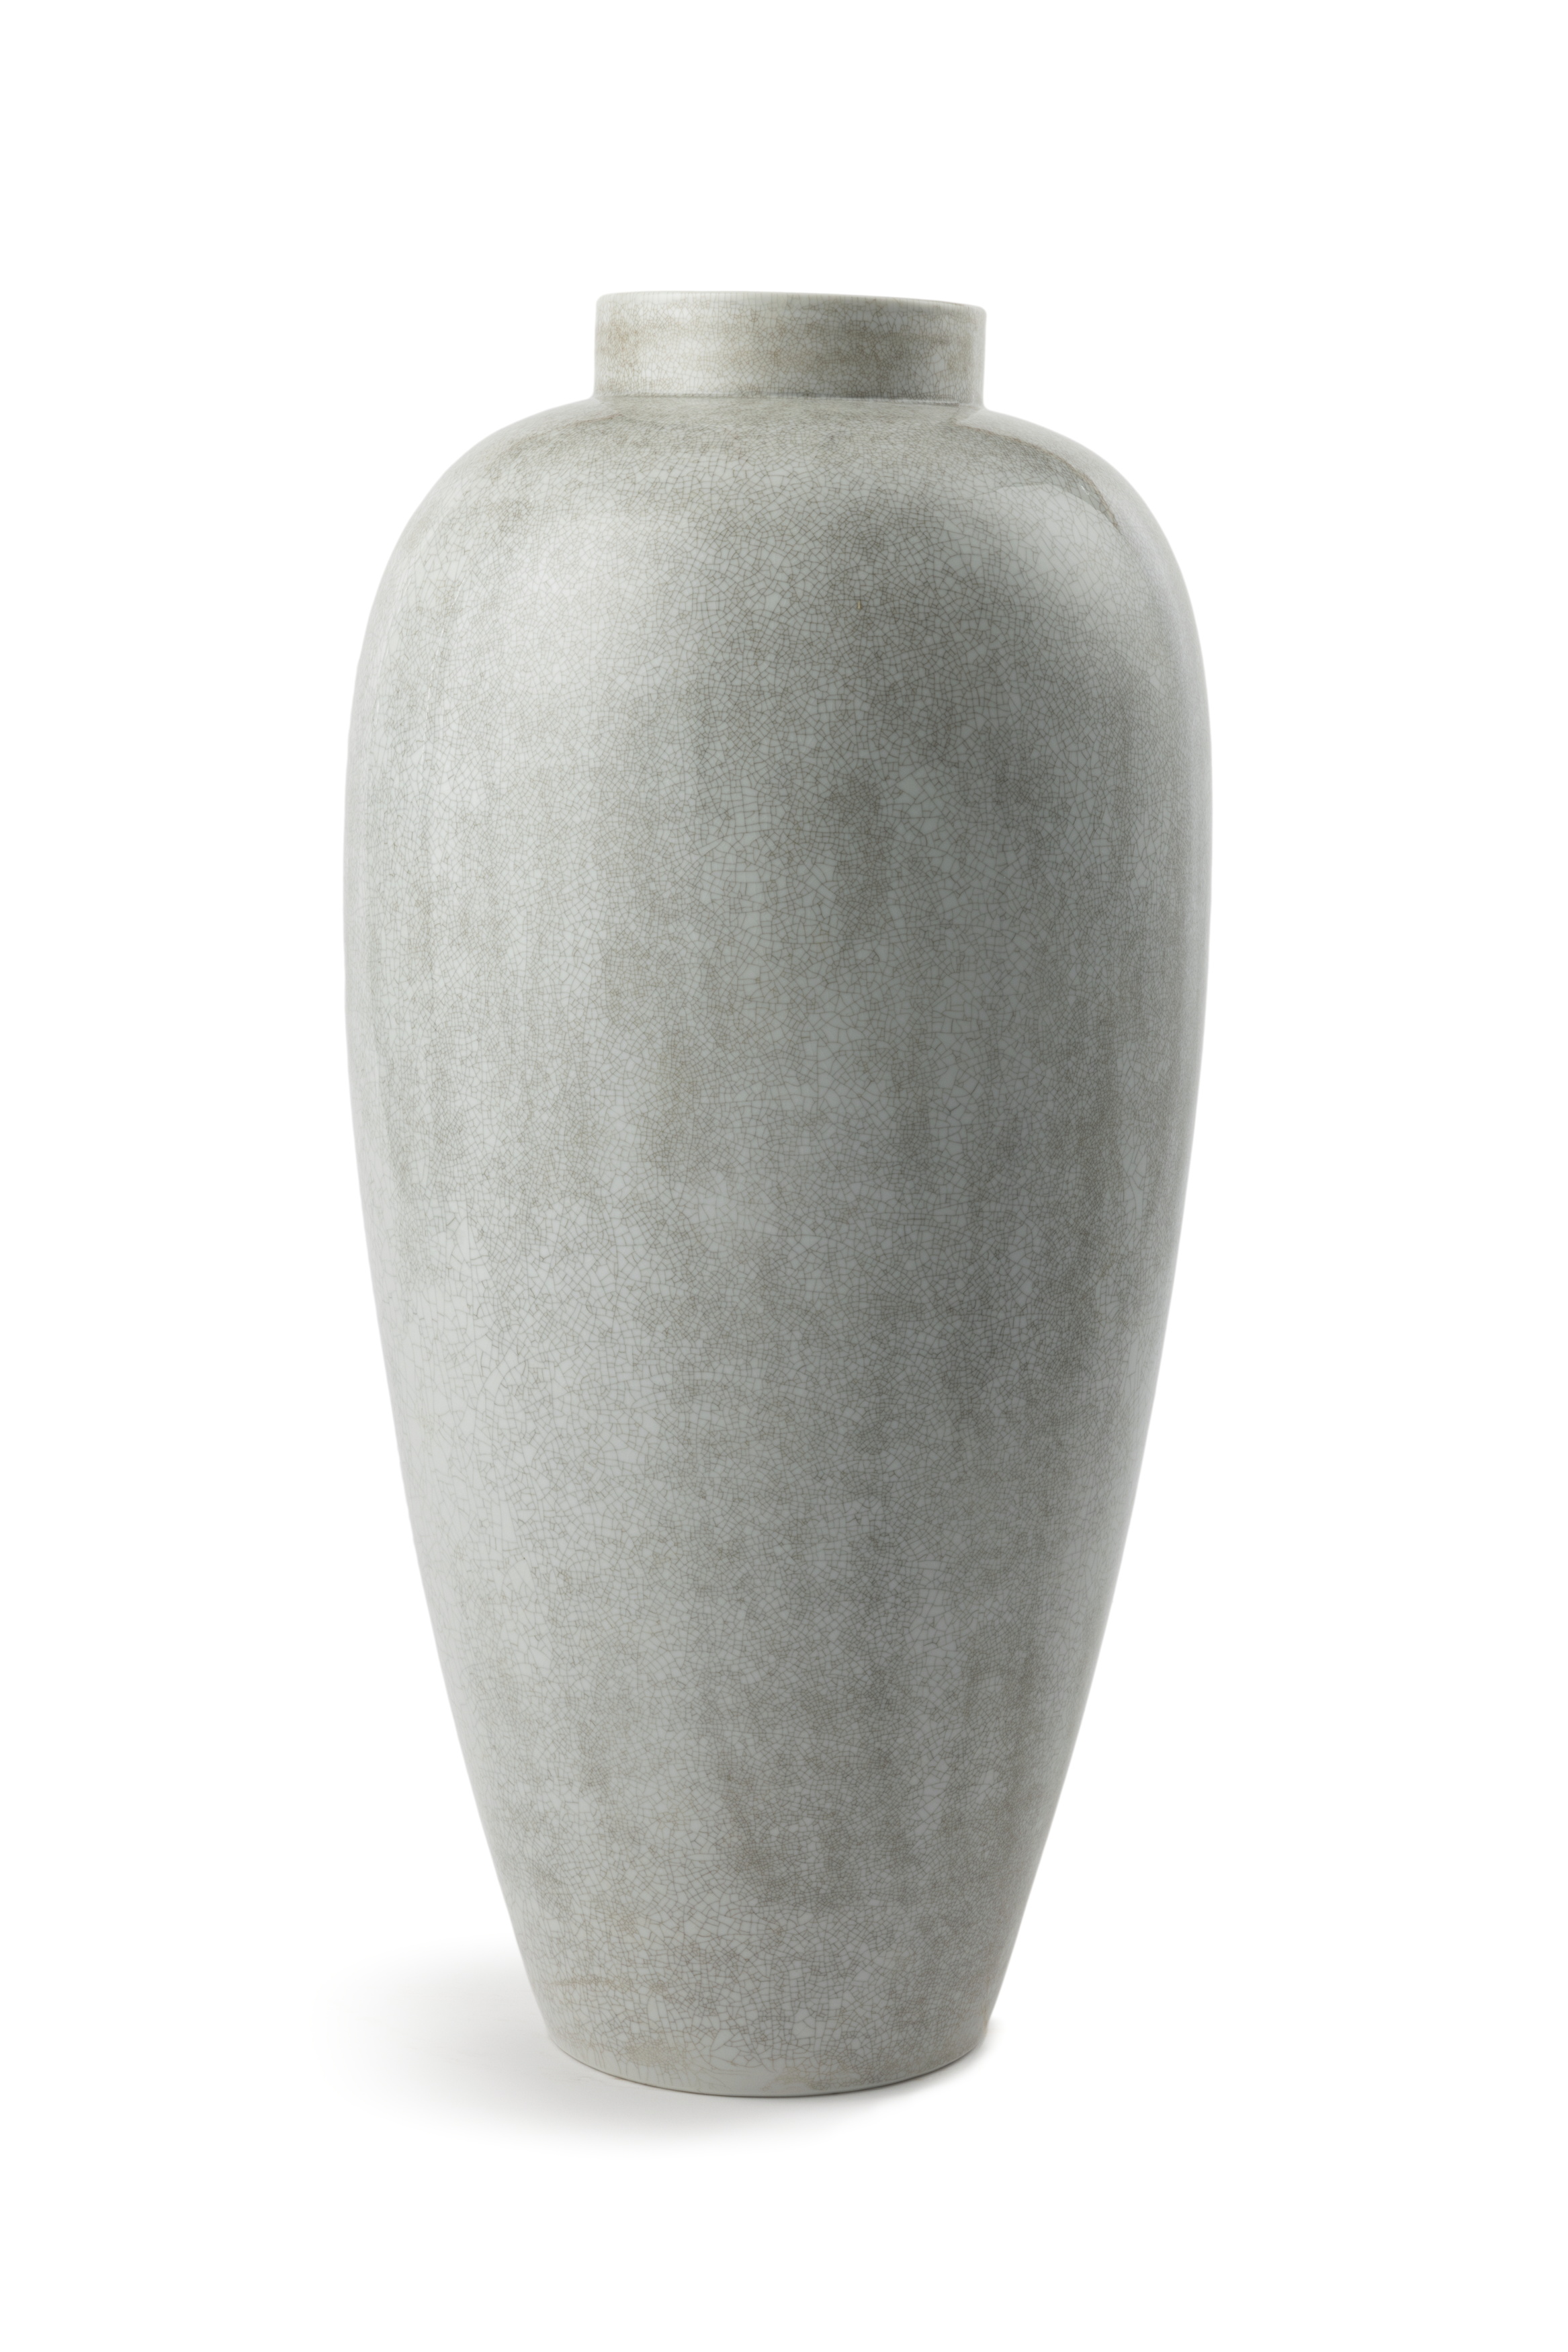 Vase made by Staatliche Porzellan Manufaktur (KPM- Konigliche Porzellan Manufaktur) Berlin